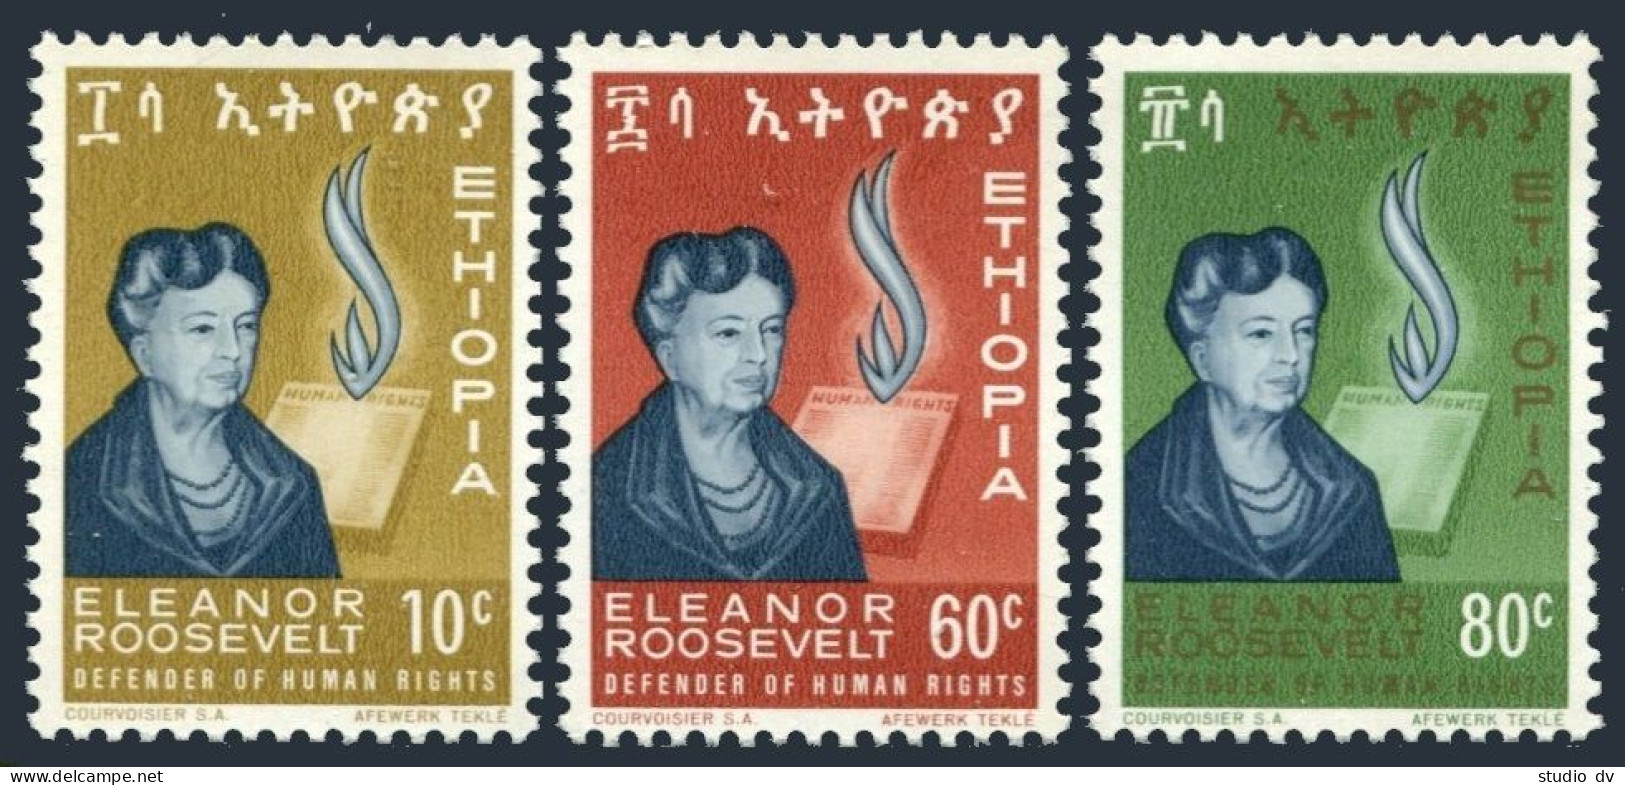 Ethiopia 425-427, MNH. Michel 483-485. Eleanor Roosevelt, 1964. - Ethiopia